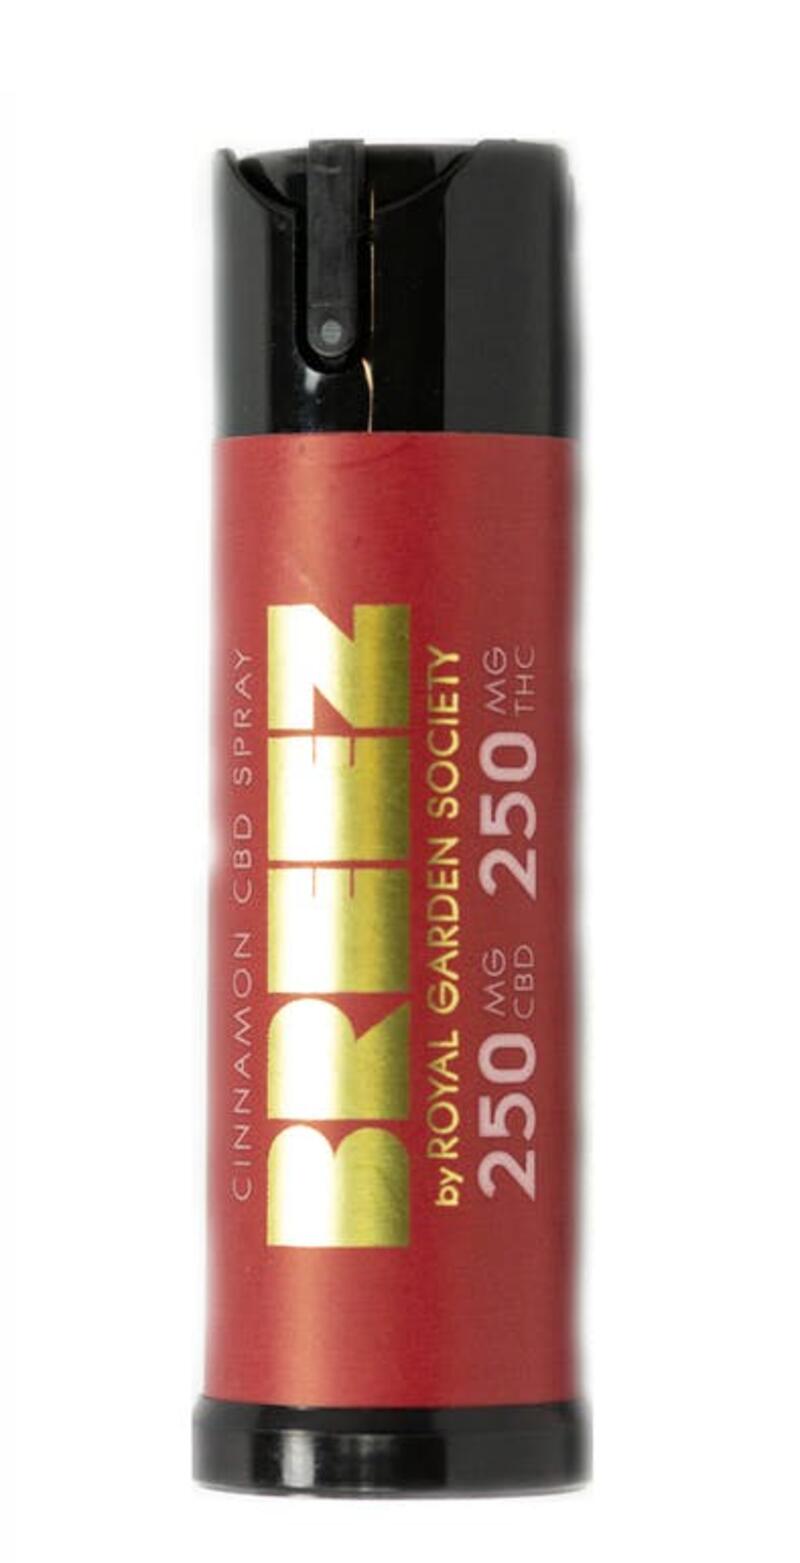 Breez - Cinnamon 1:1 High CBD Spray (250mg THC / 250mg CBD)